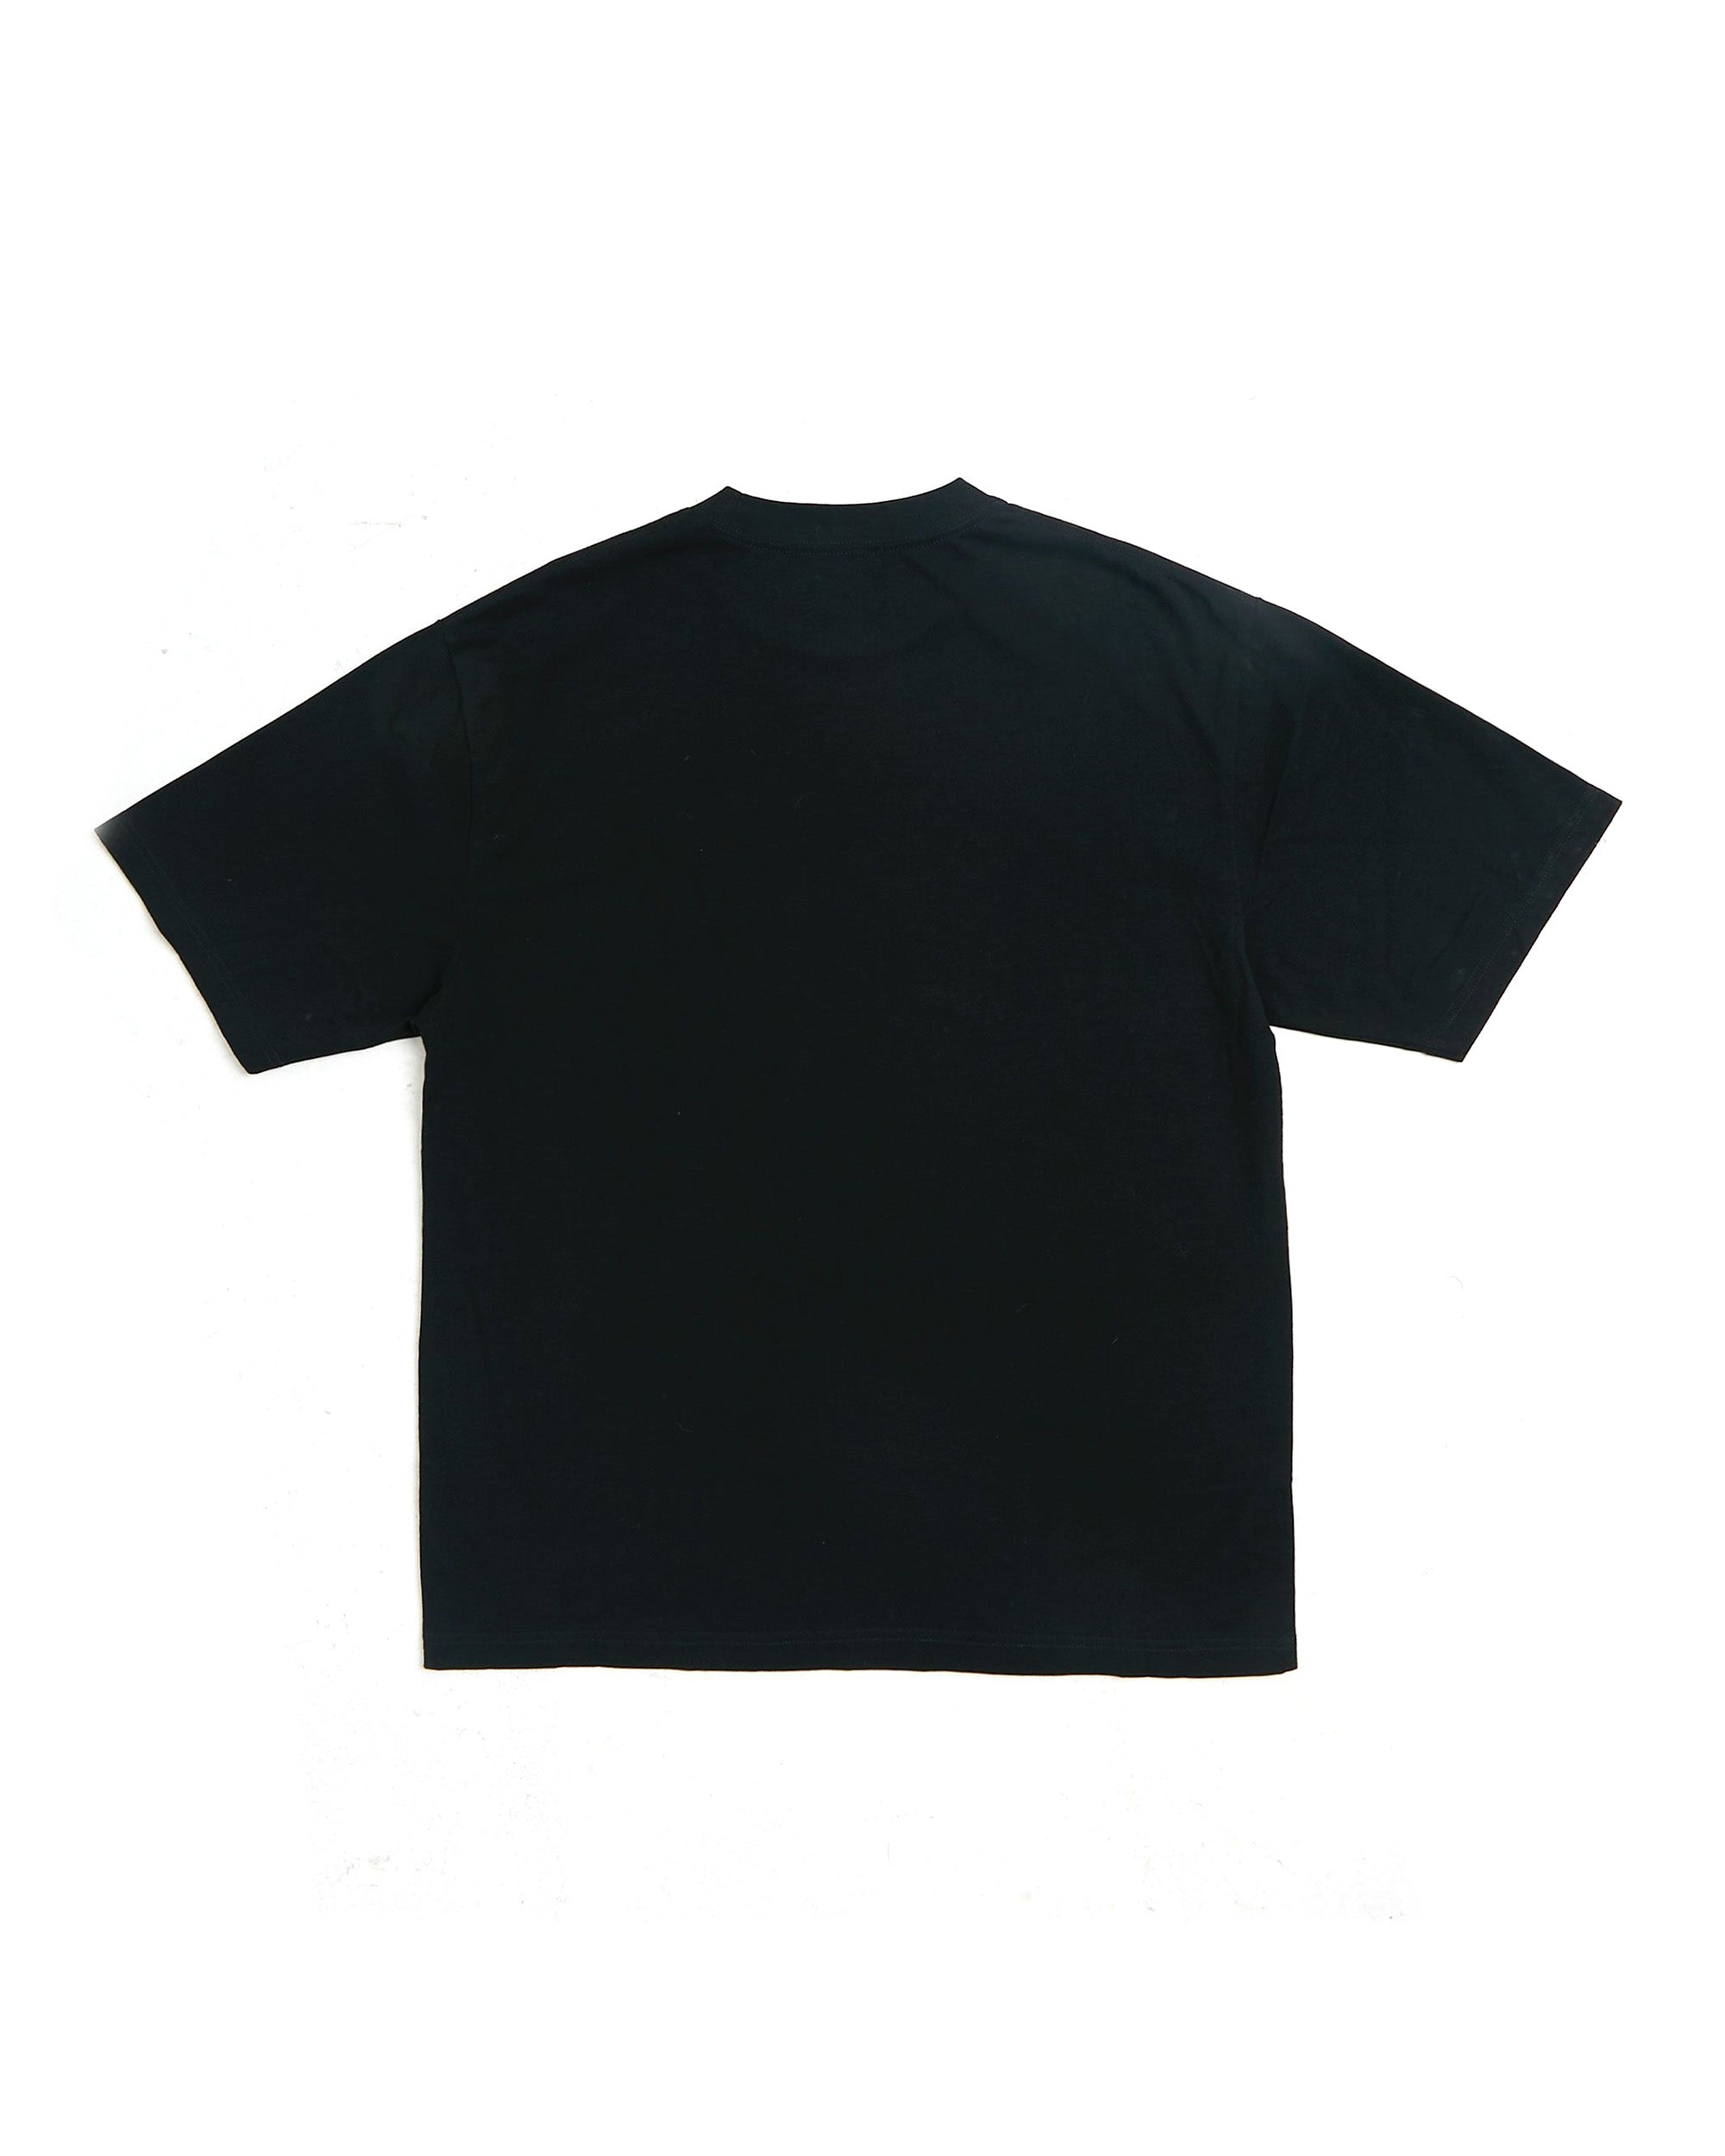 Quest T-shirt - Black